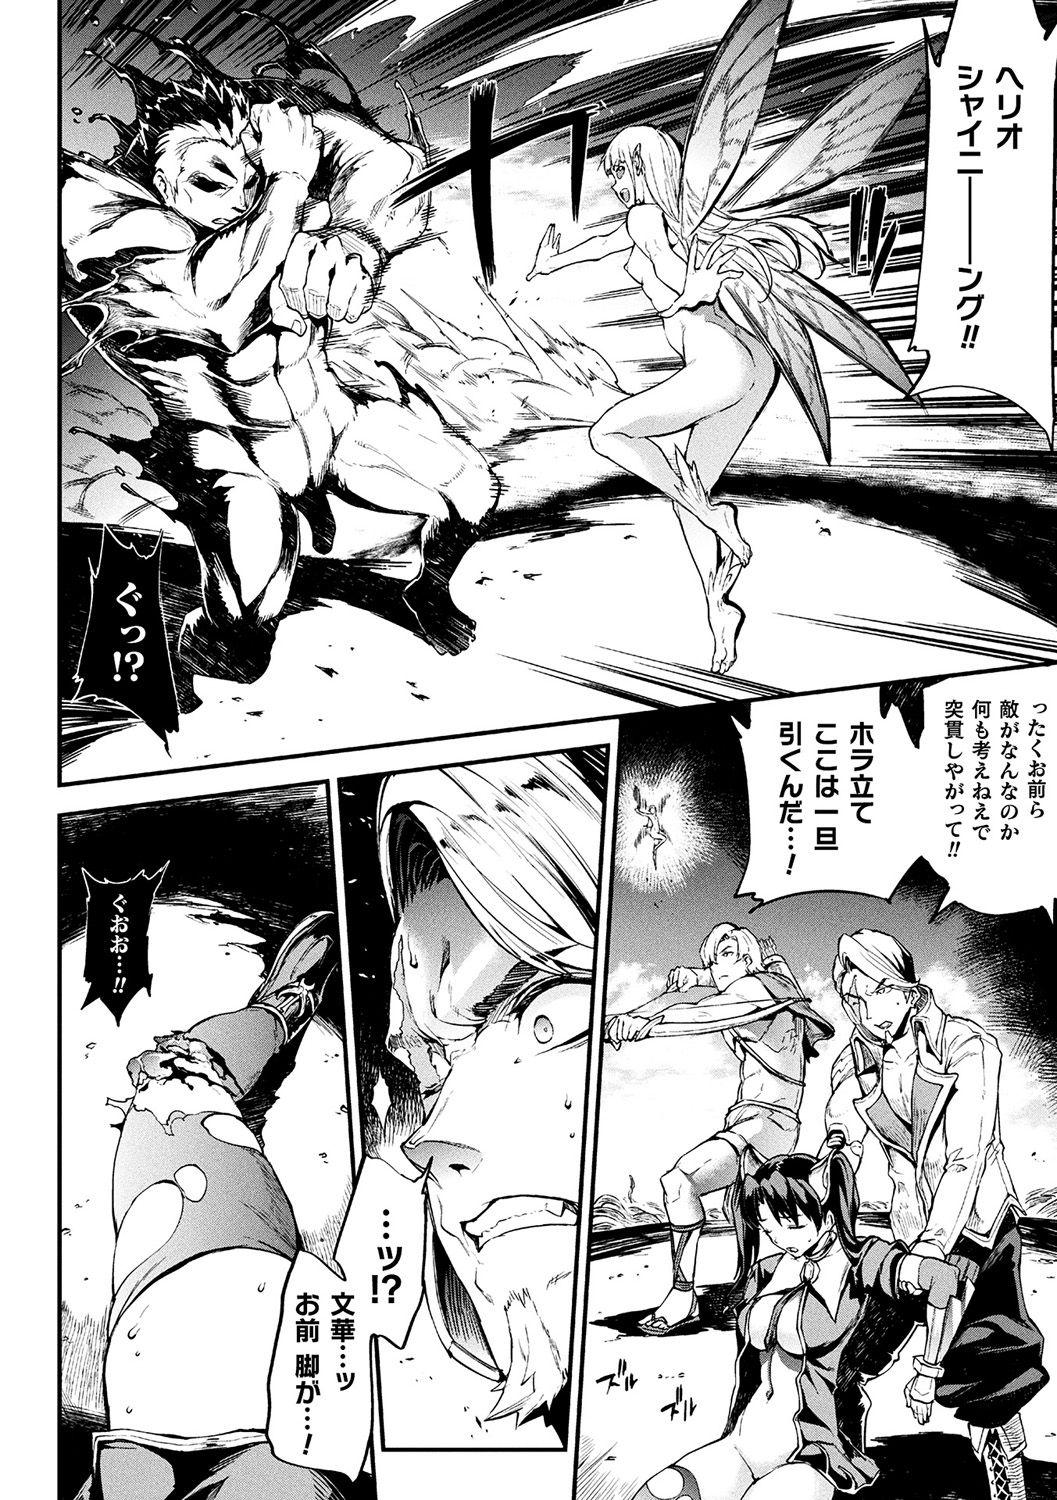 [Erect Sawaru] Raikou Shinki Igis Magia II -PANDRA saga 3rd ignition- + Denshi Shoseki Tokuten Digital Poster [Digital] 207